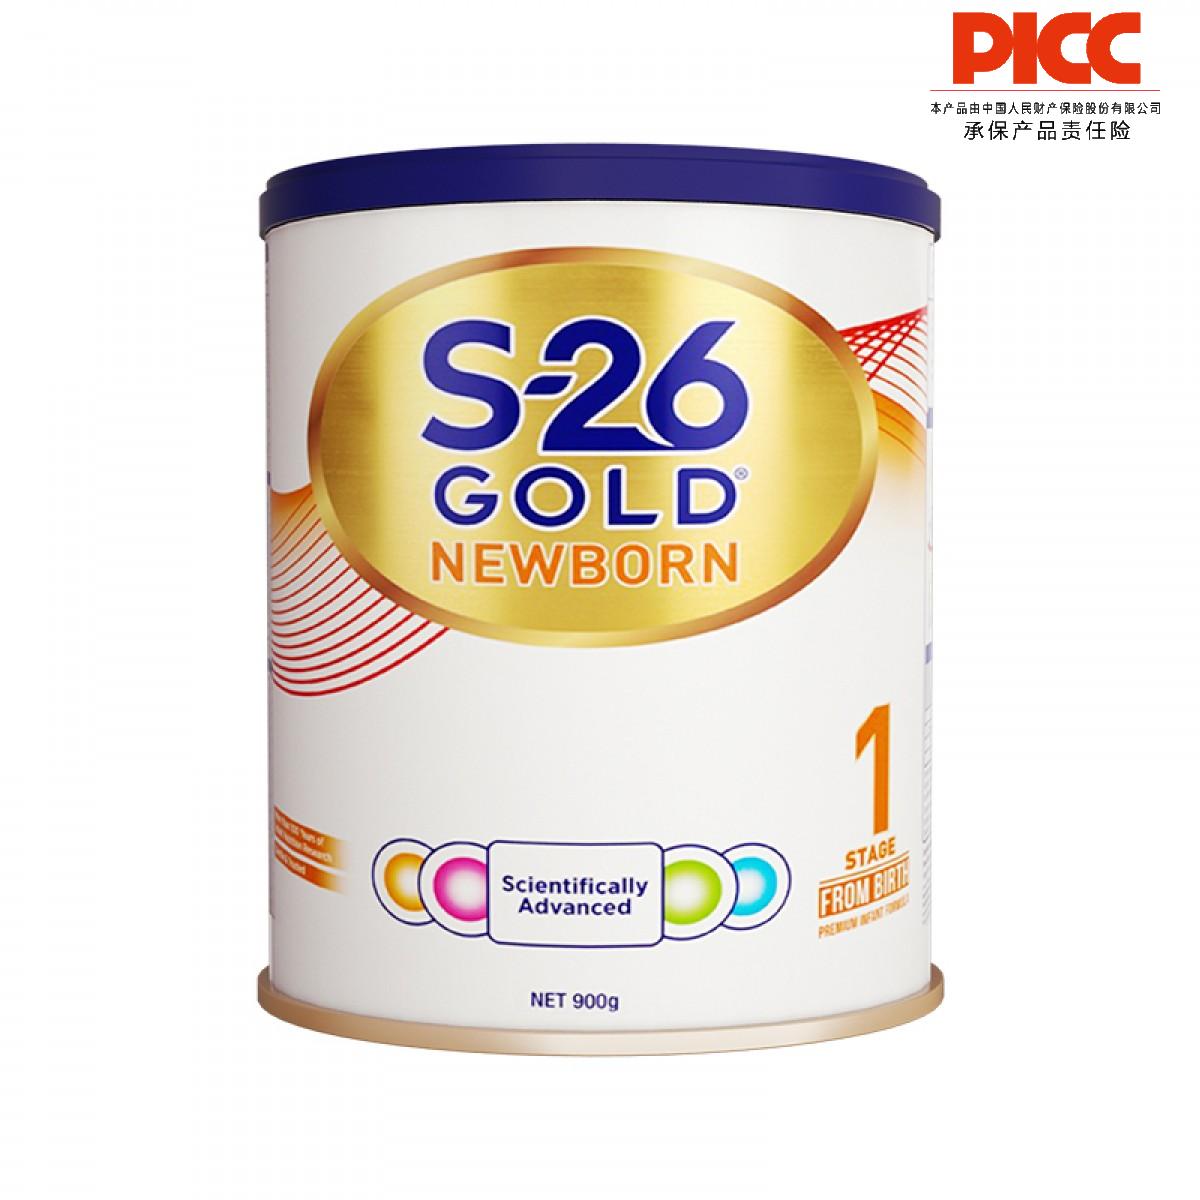 【保稅】新西蘭Wyeth惠氏S26金裝嬰兒配方奶粉1段900g/罐